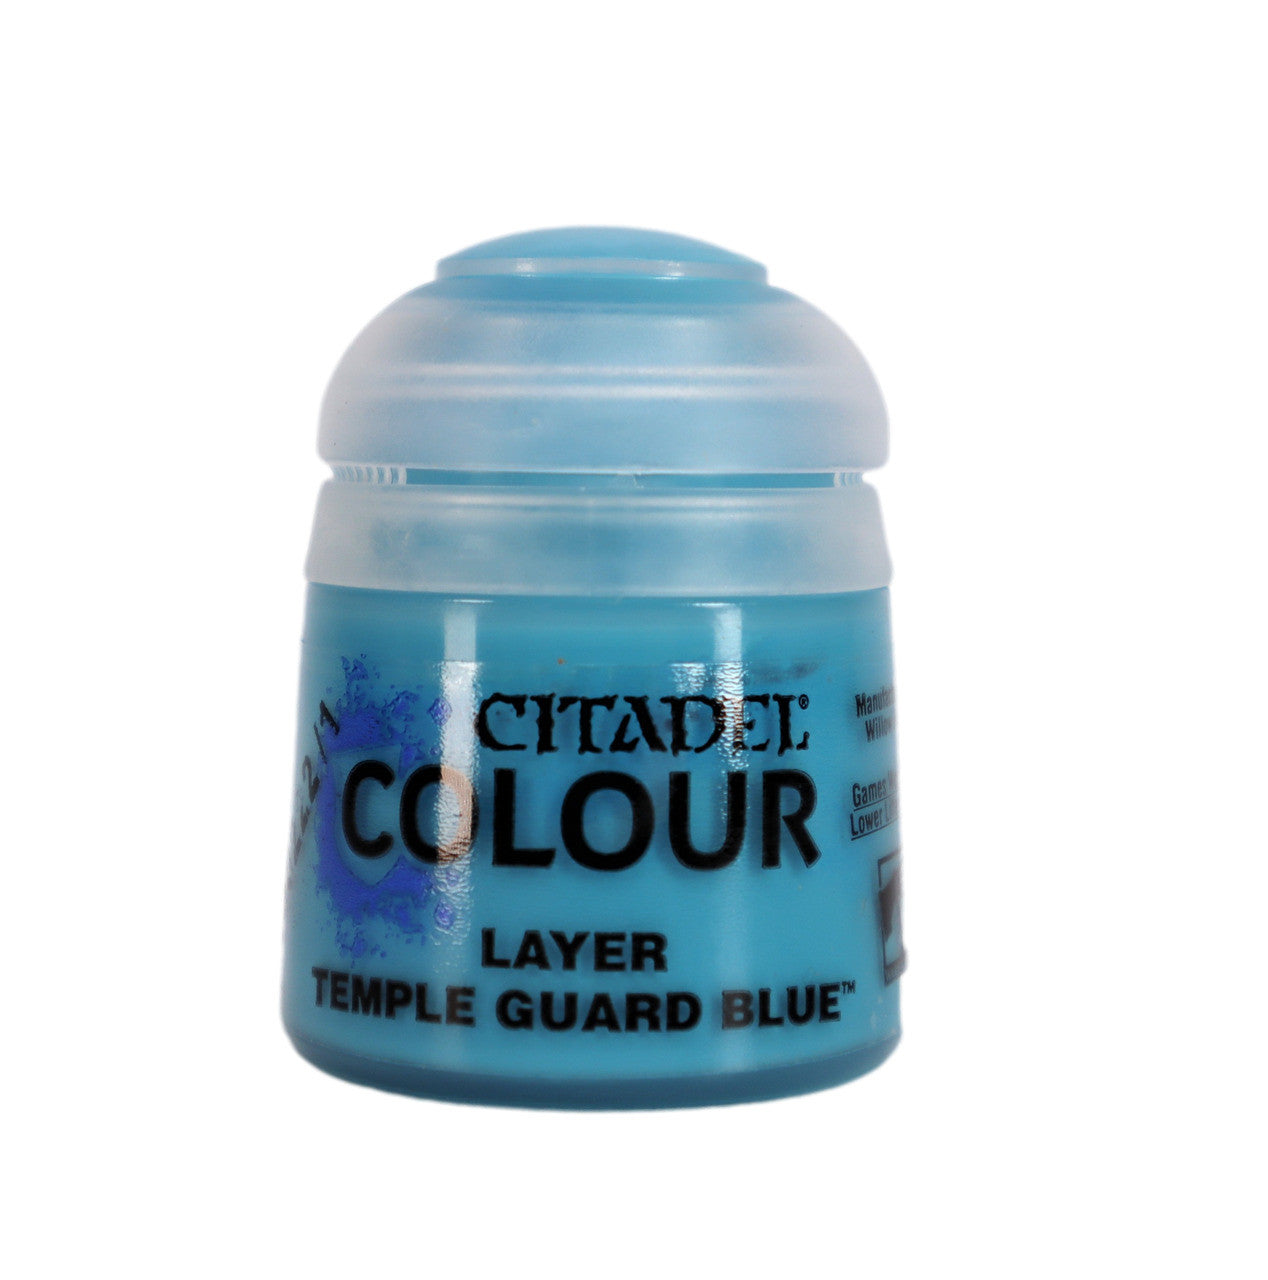 Citadel Colour - Temple Guard Blue Layer Paint